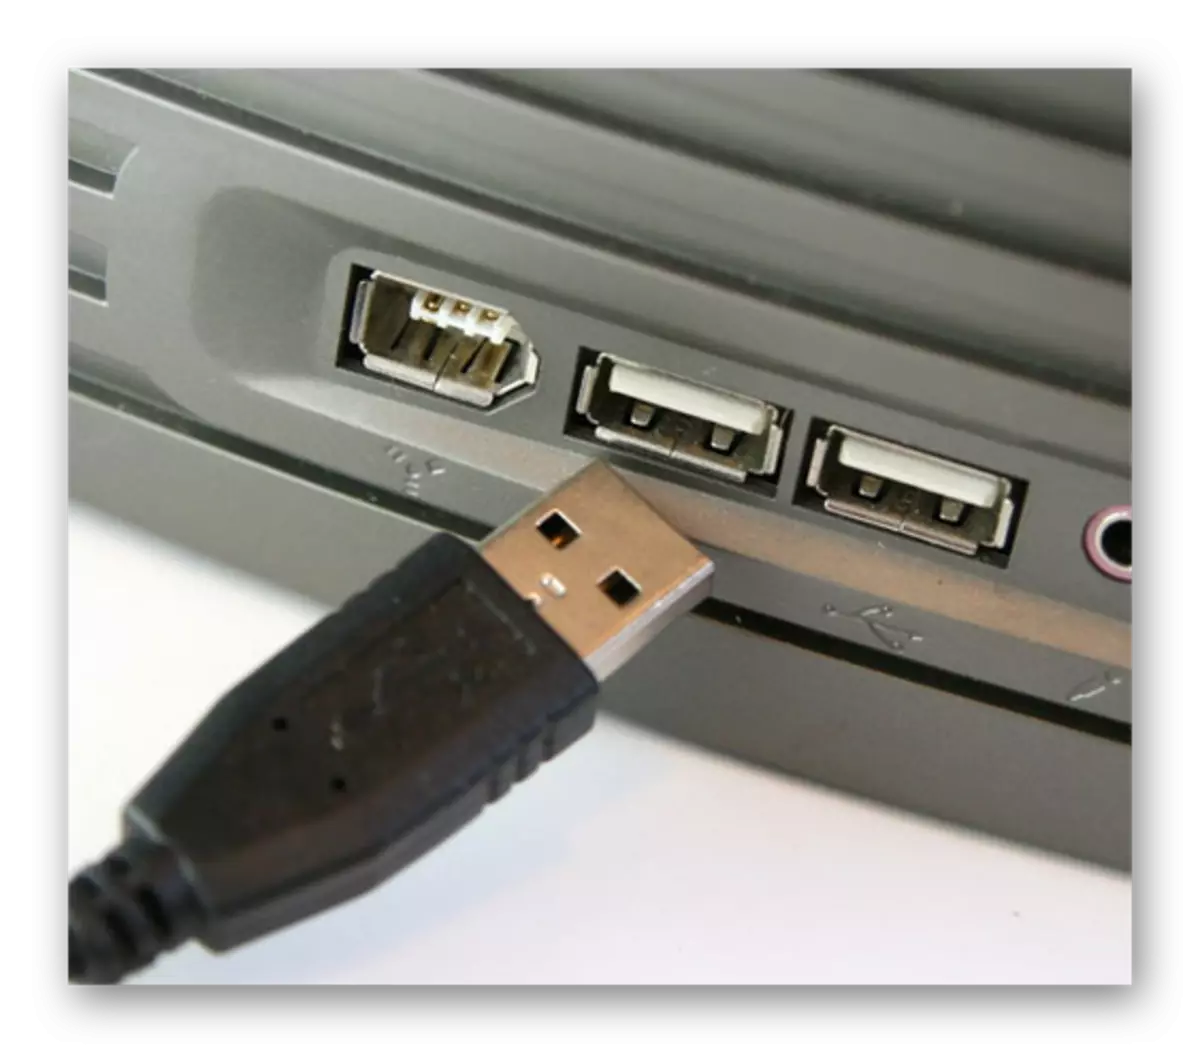 Cov txheej txheem ntawm kev txuas lub USB cable rau USB txuas rau lub laptop